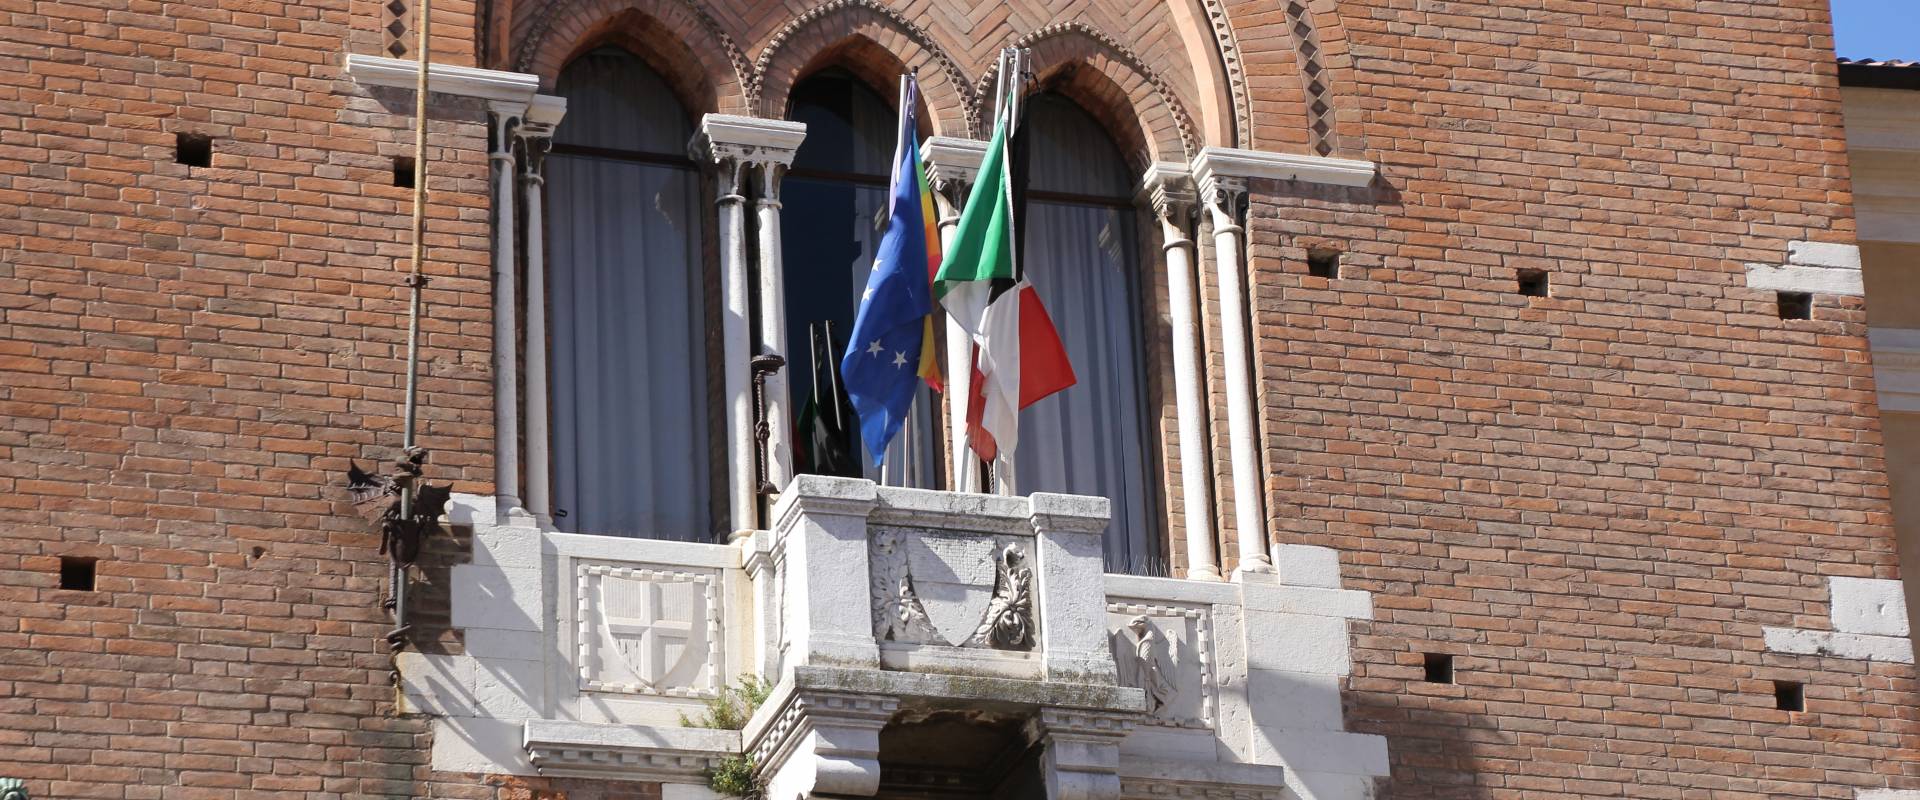 Ferrara, palazzo municipale (09) foto di Gianni Careddu